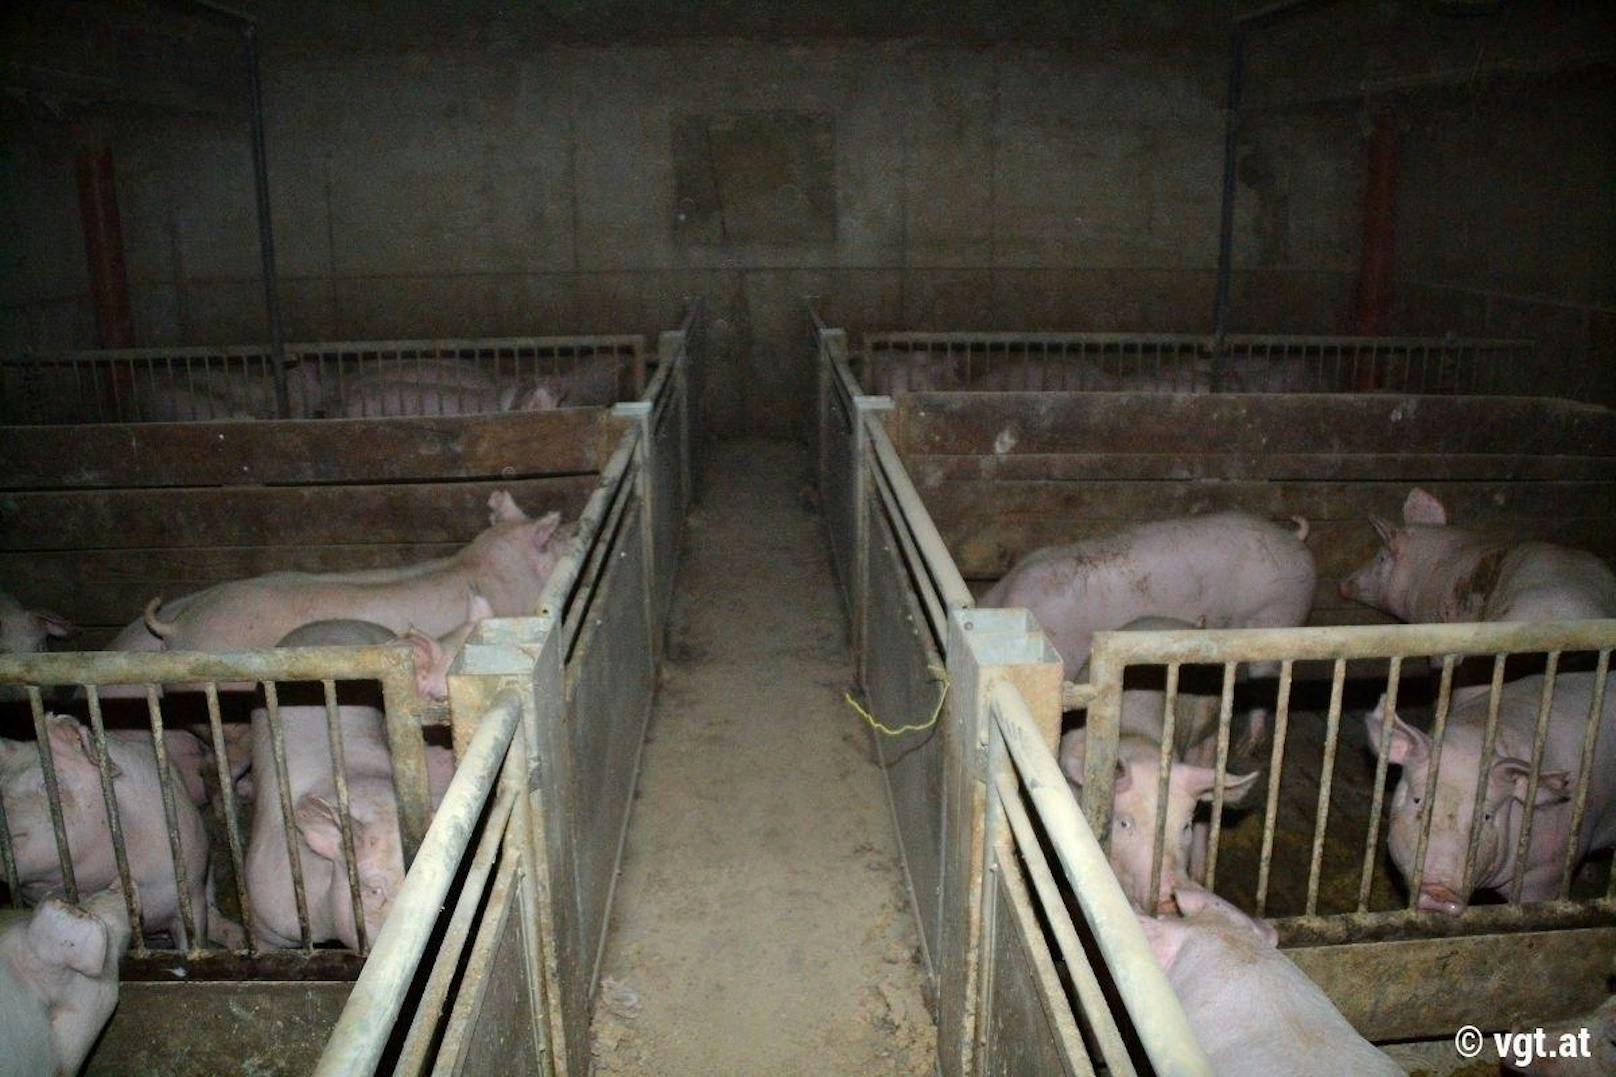 Vorwurf des VGT: "Schweine vegetieren in der Dunkelheit dahin."